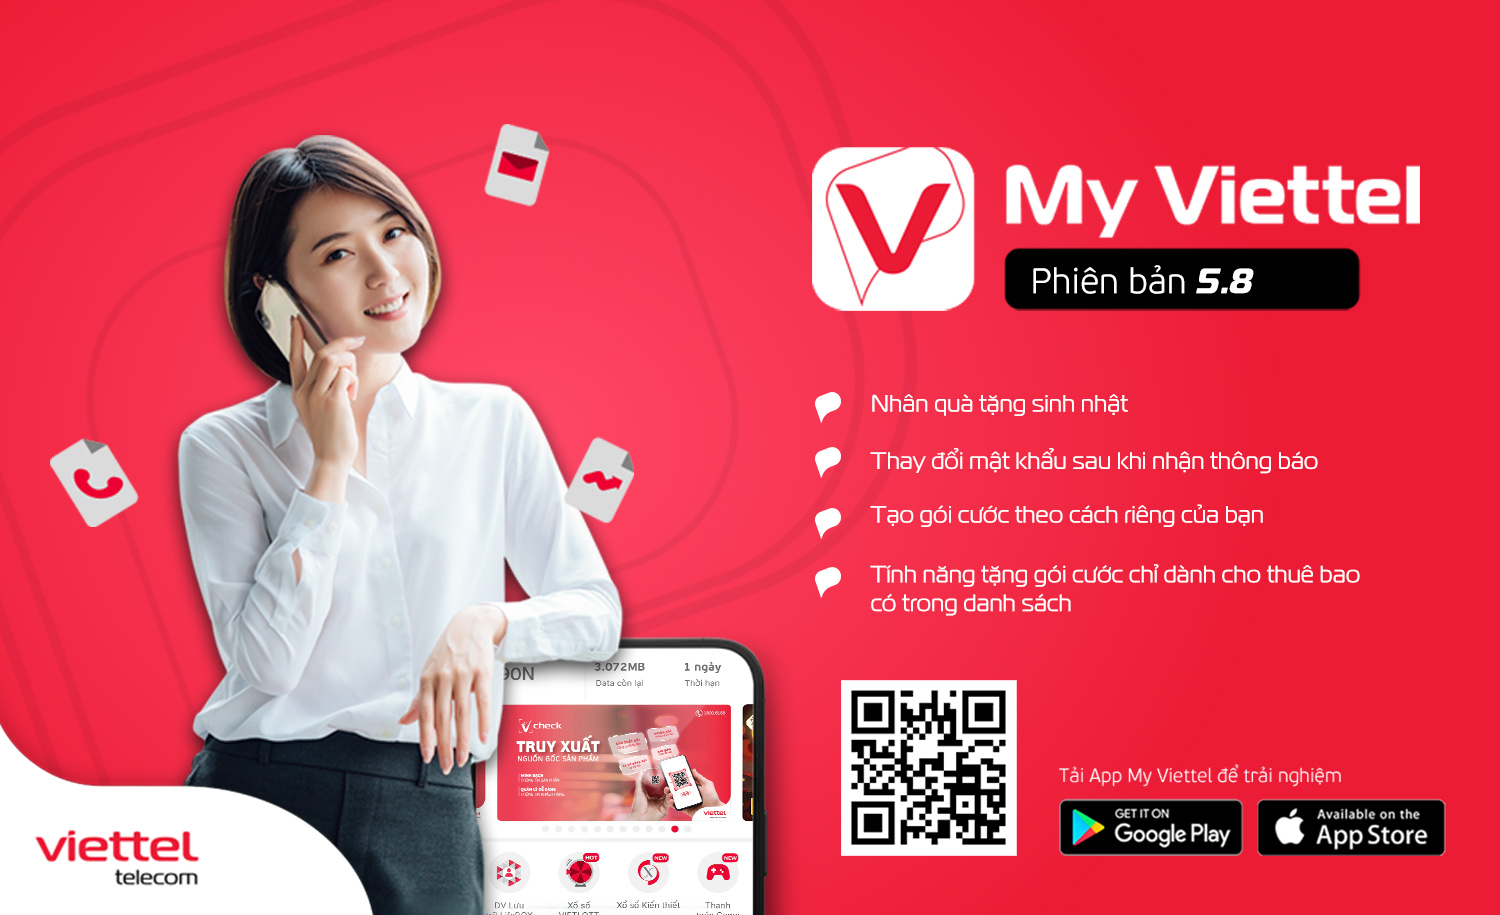 Viettel Telecom là một trong những nhà cung cấp dịch vụ viễn thông hàng đầu ở Việt Nam với rất nhiều tiện ích khác nhau. Tại đây, bạn có thể sử dụng cổng thông tin để tìm hiểu và sử dụng các dịch vụ e-government. Những hình ảnh liên quan sẽ giúp bạn hiểu thêm về sự đa dạng và hợp lý của các dịch vụ của Viettel Telecom.